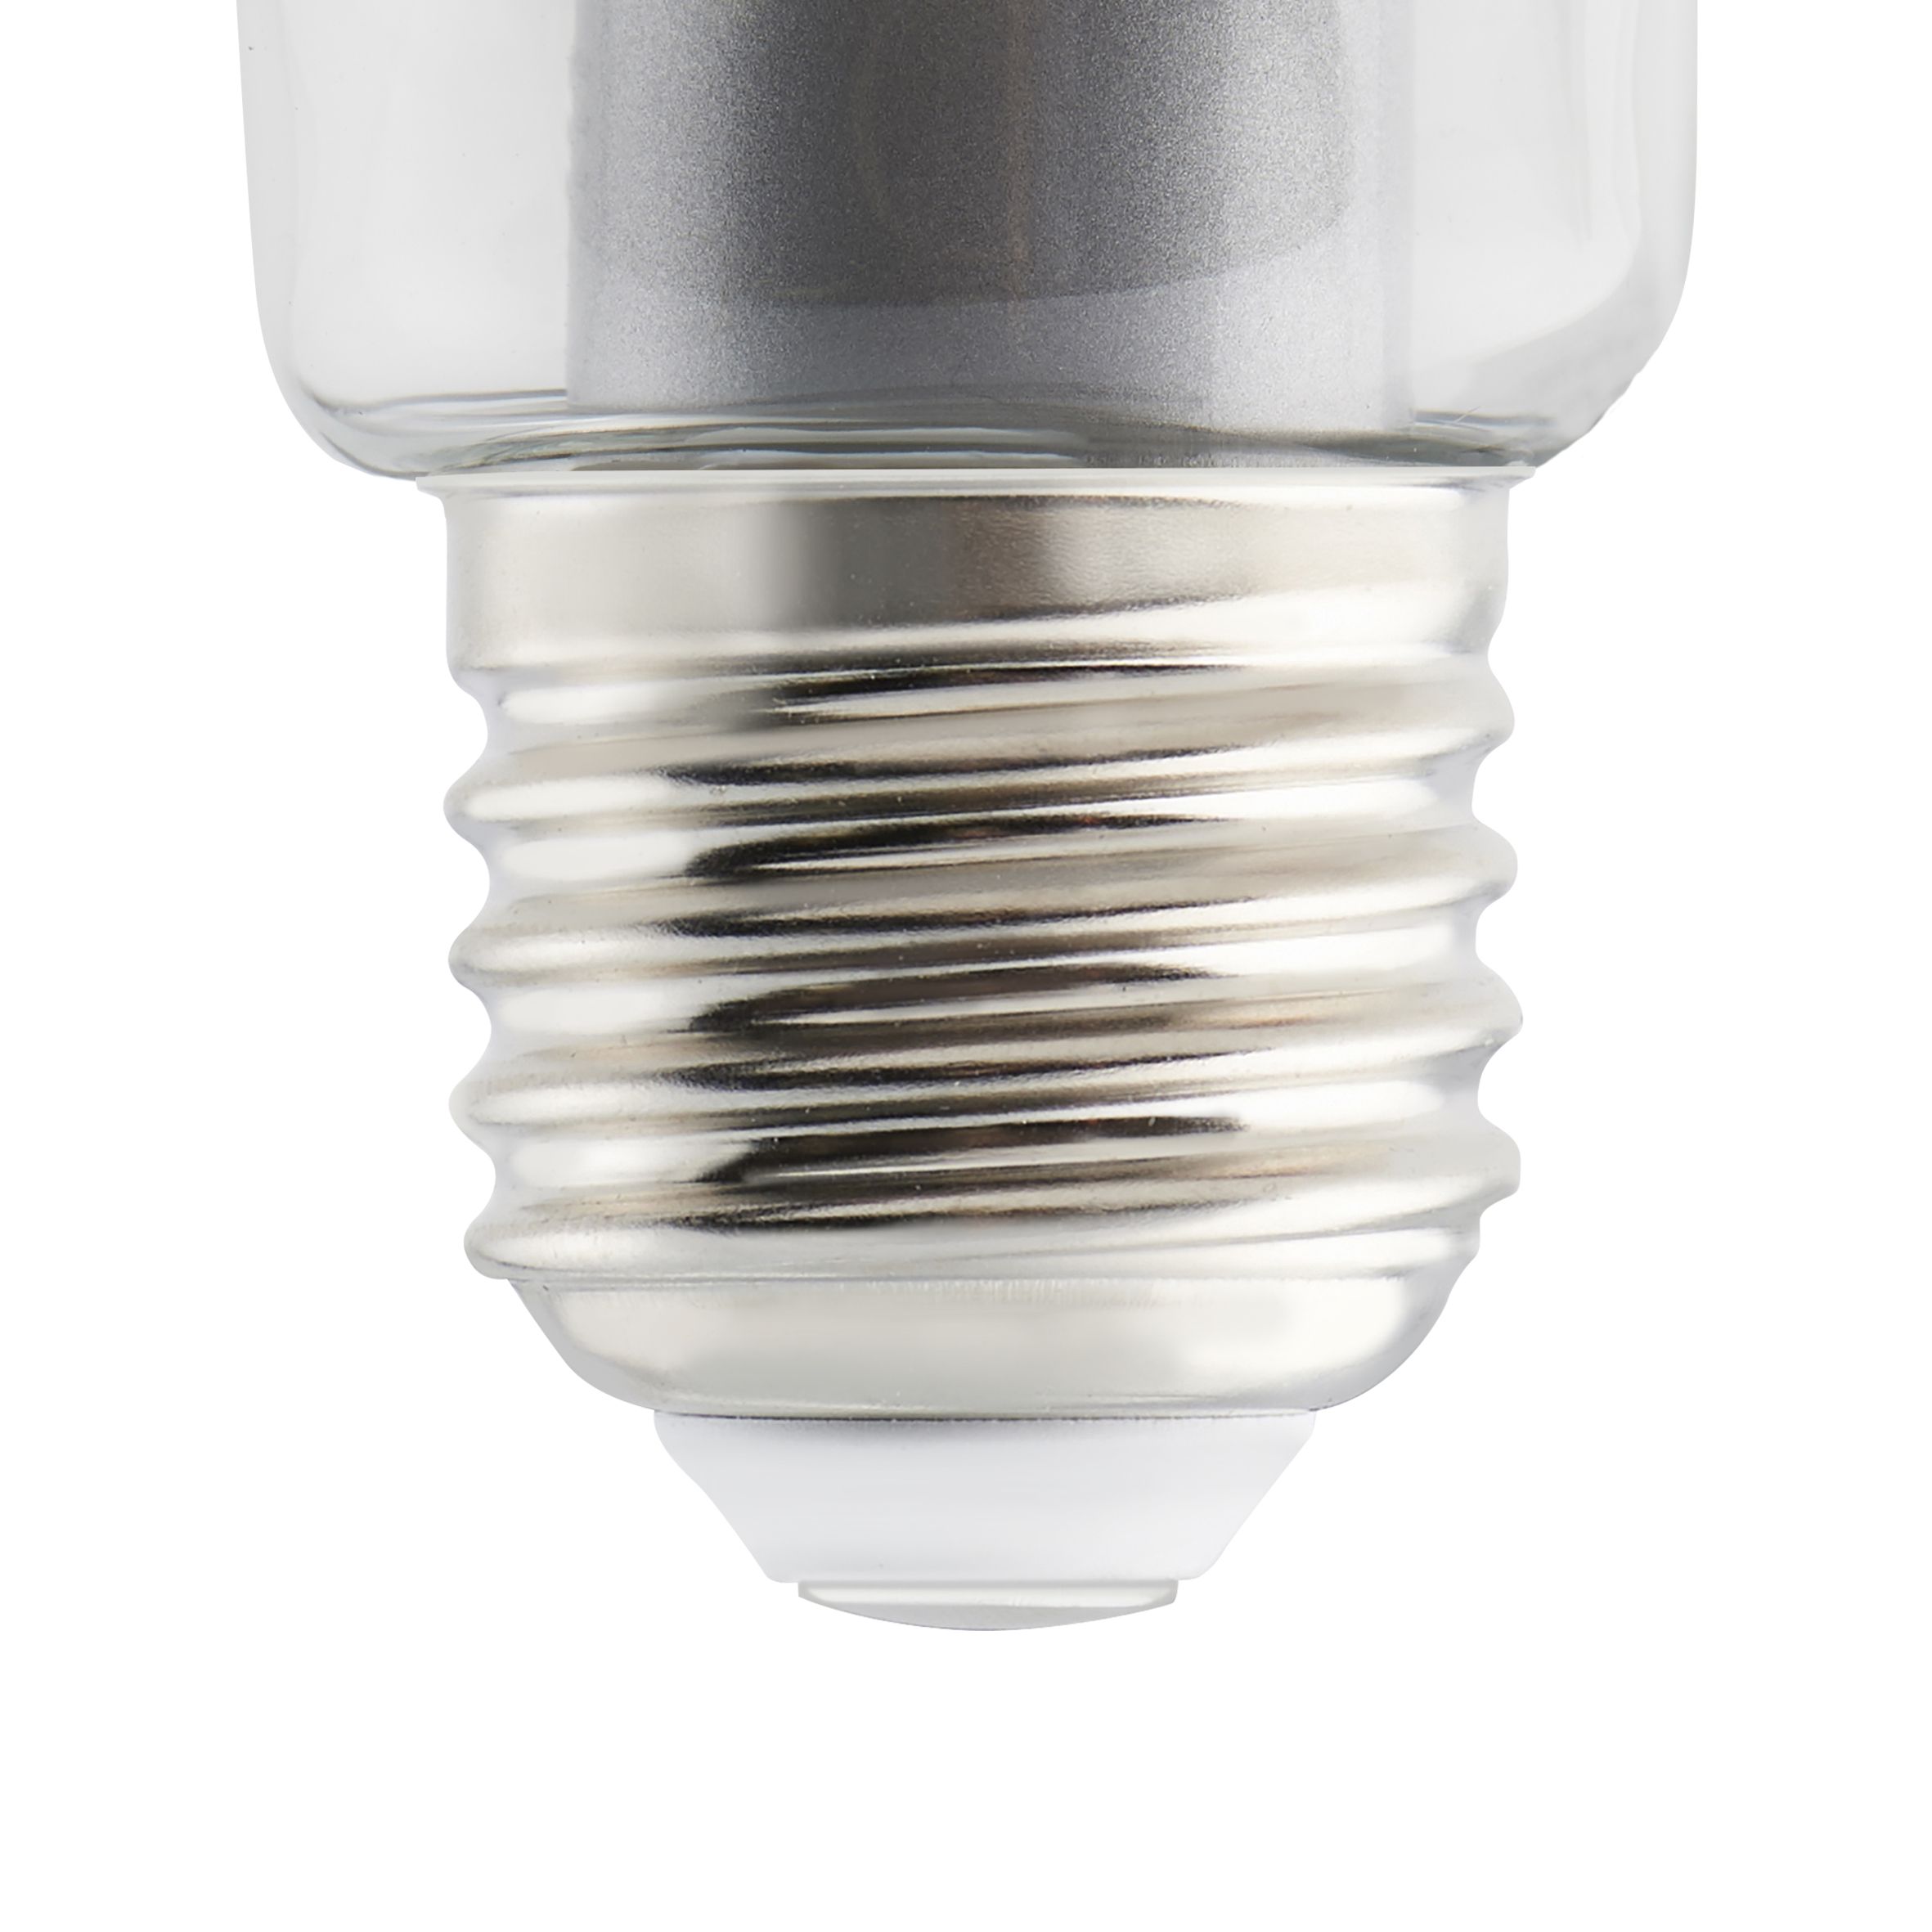 Ampoule LED GLS E27 3452lm 27W = 200W Ø8cm Diall blanc neutre